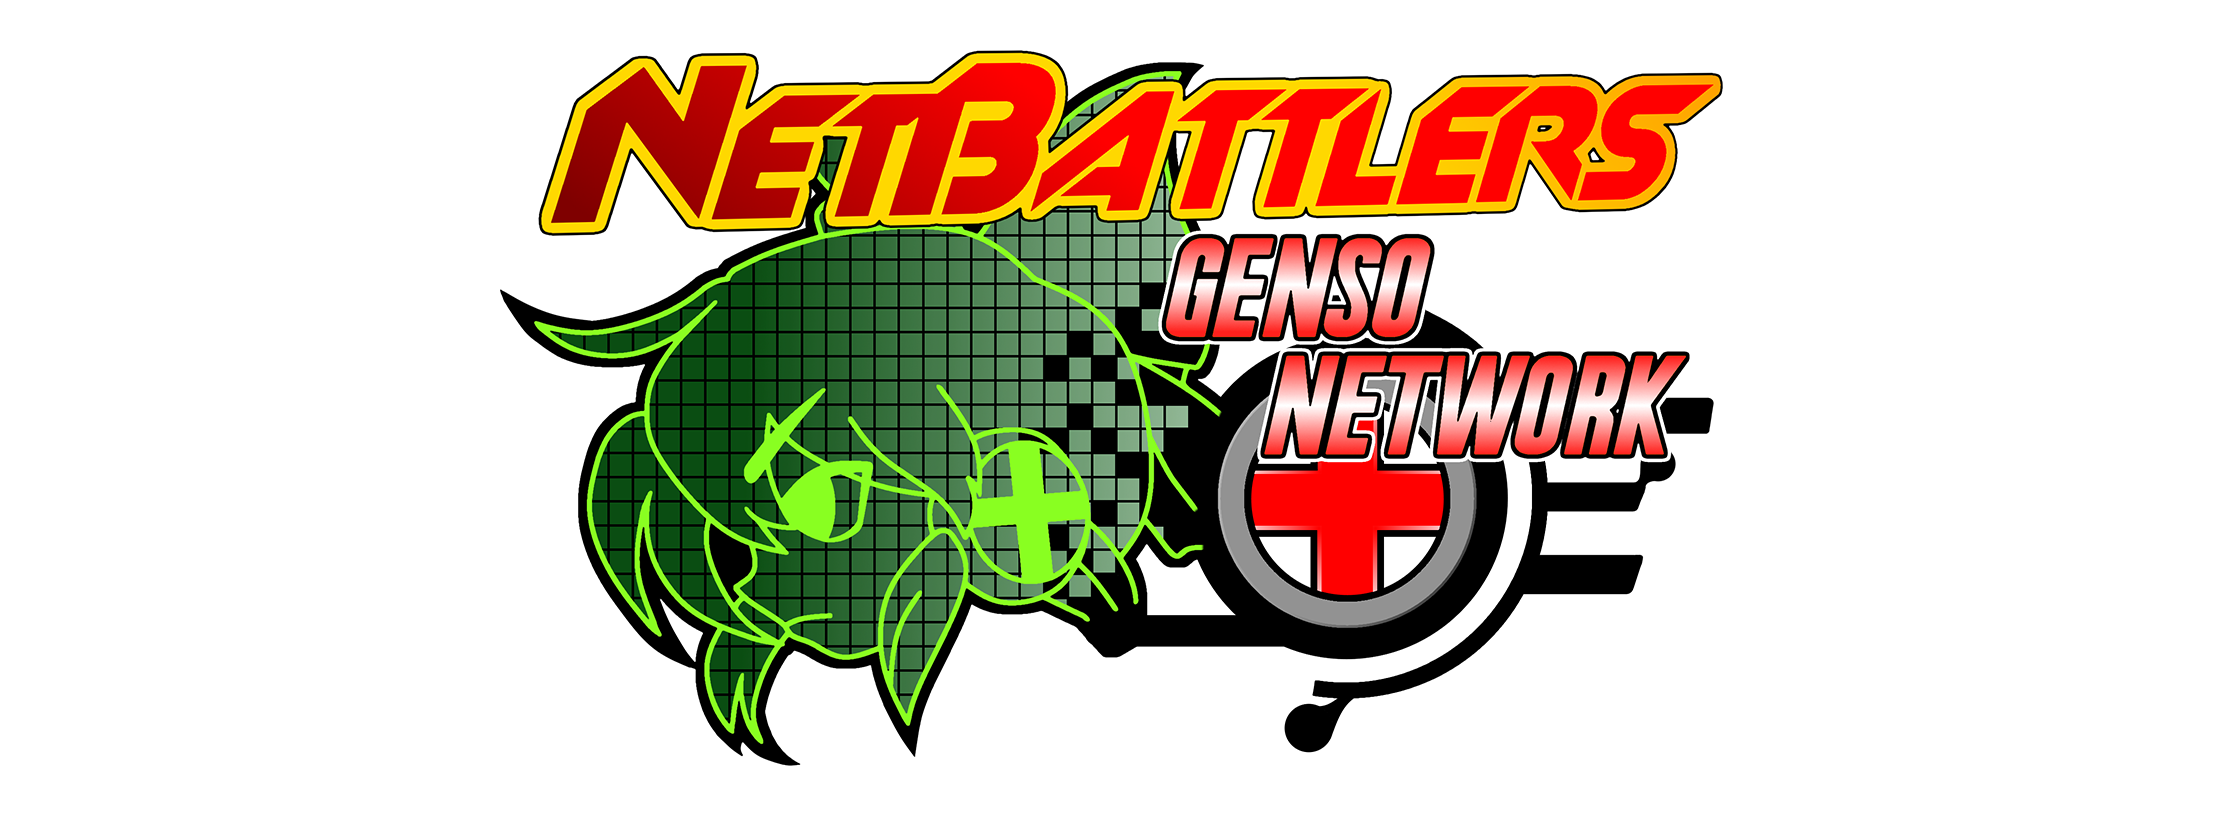 NetBattlers: Genso Network